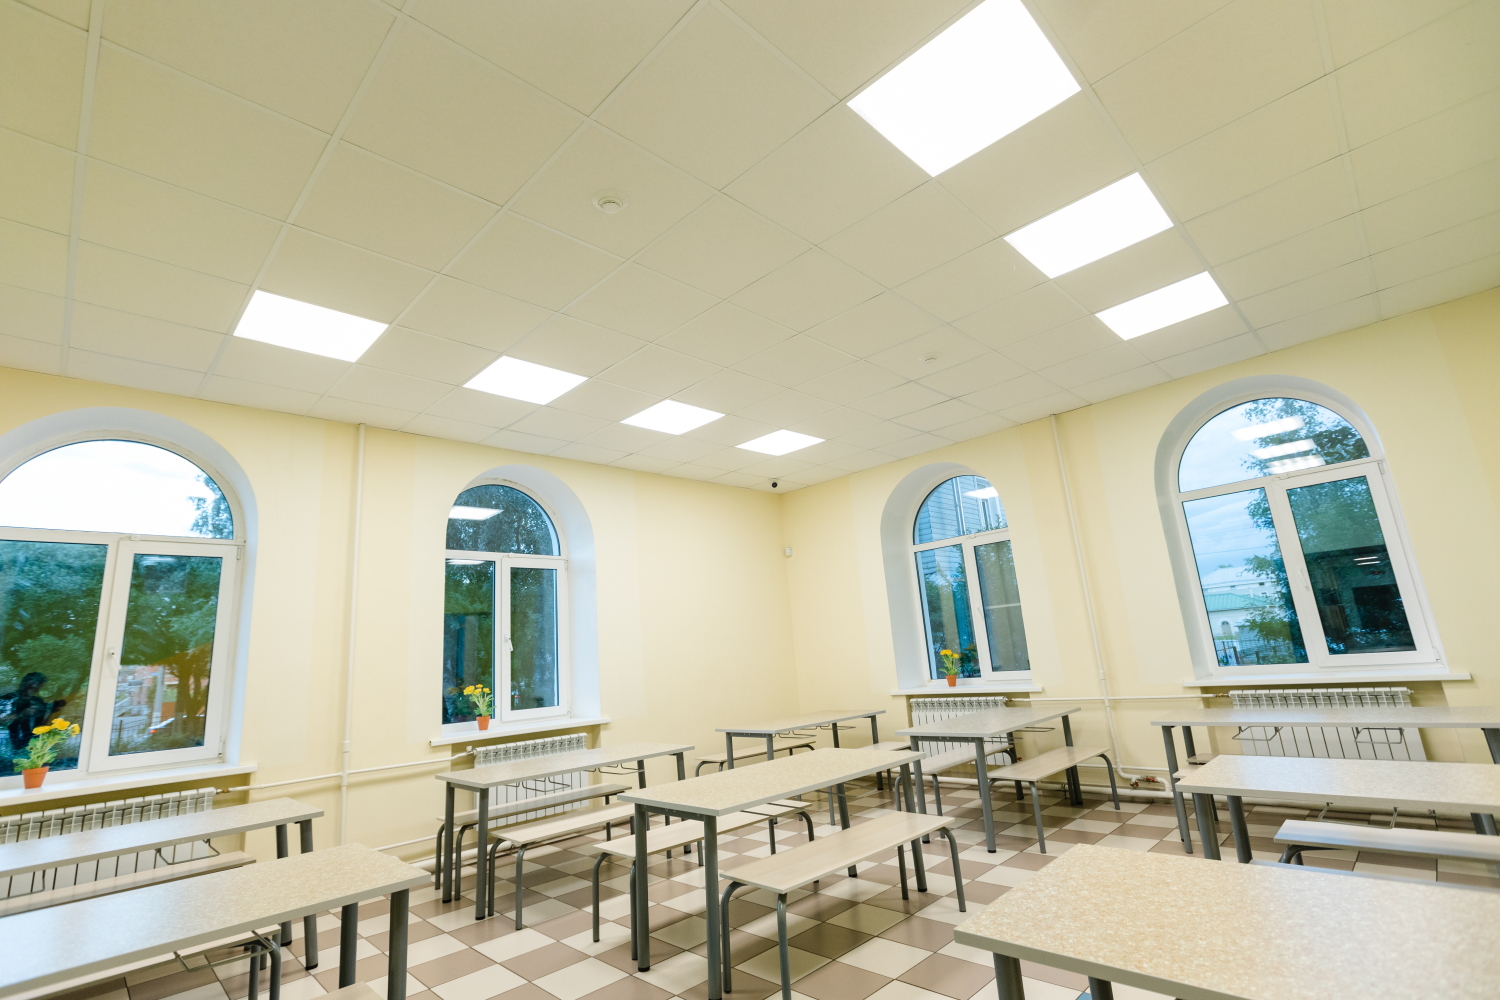 ВСТЗ Луч Производитель светодиодных светильников для школ и других образовательных учреждений - 1